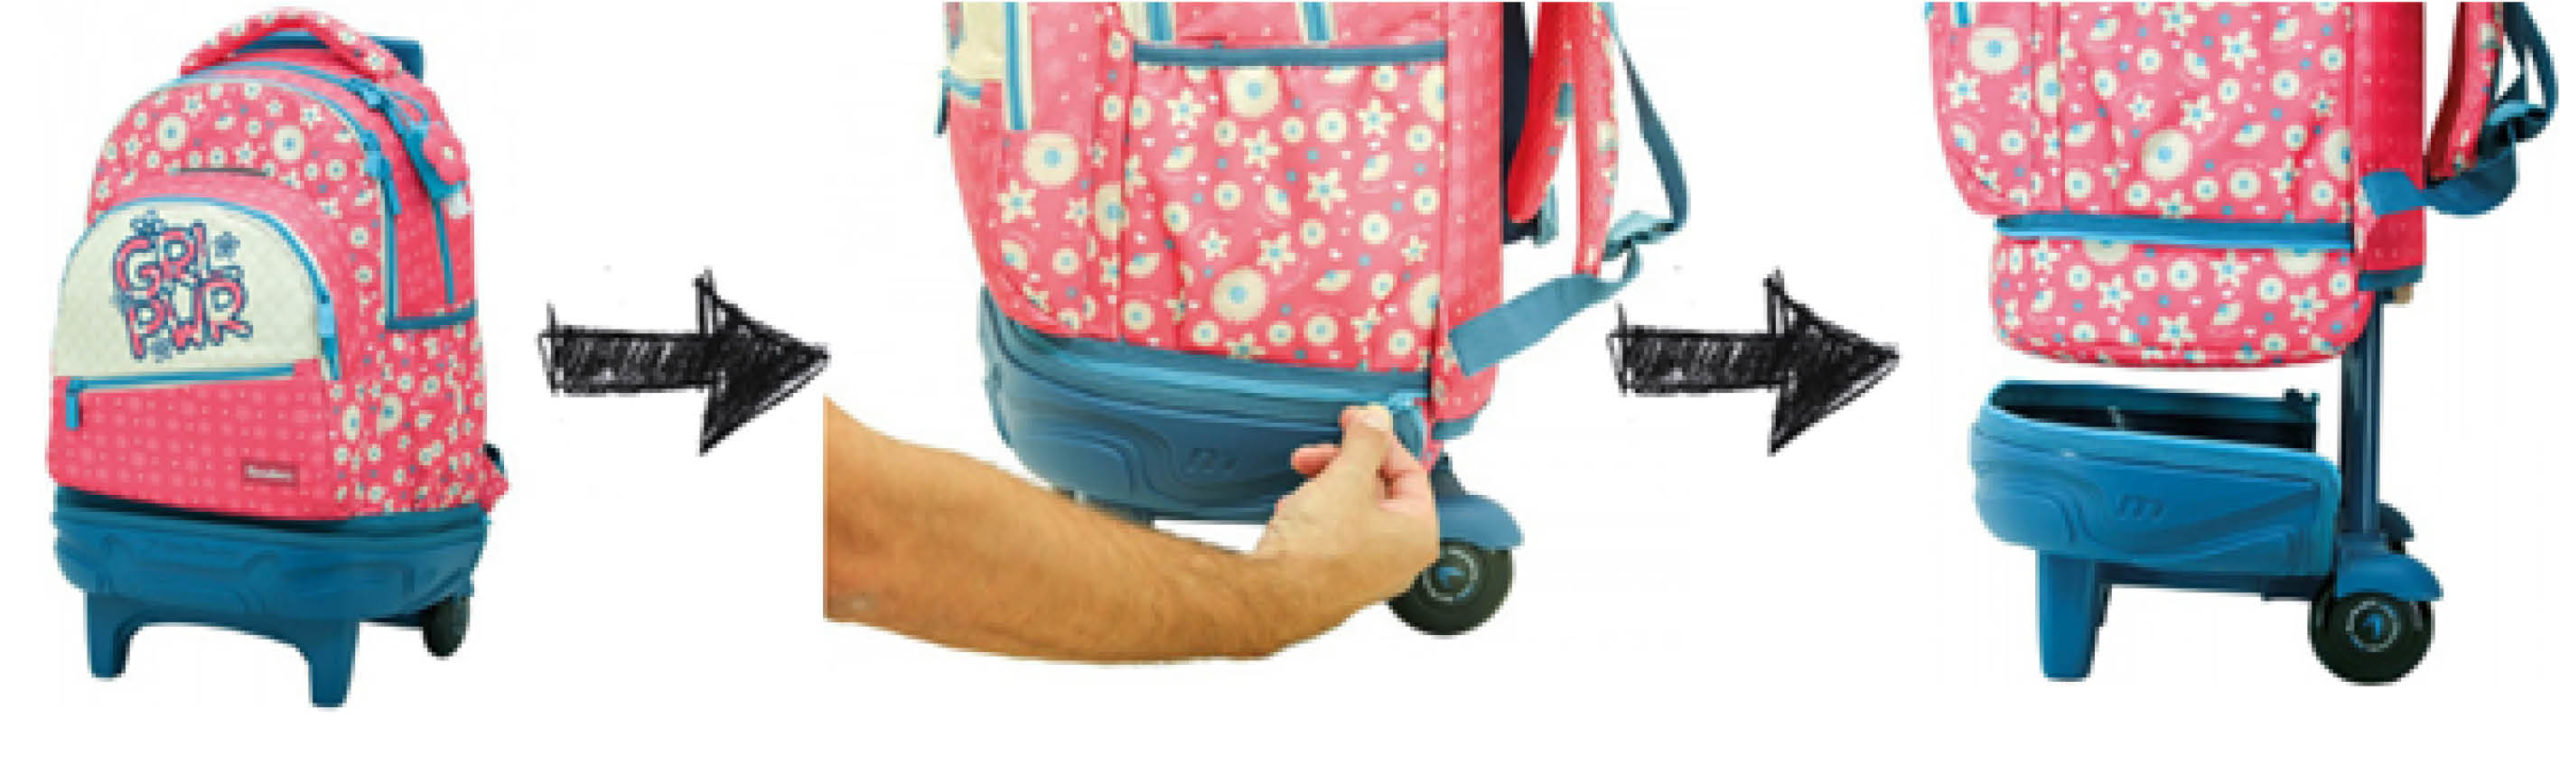 Son las mochilas con ruedas desmontables una opción a valorar? » El collar  de macarrones